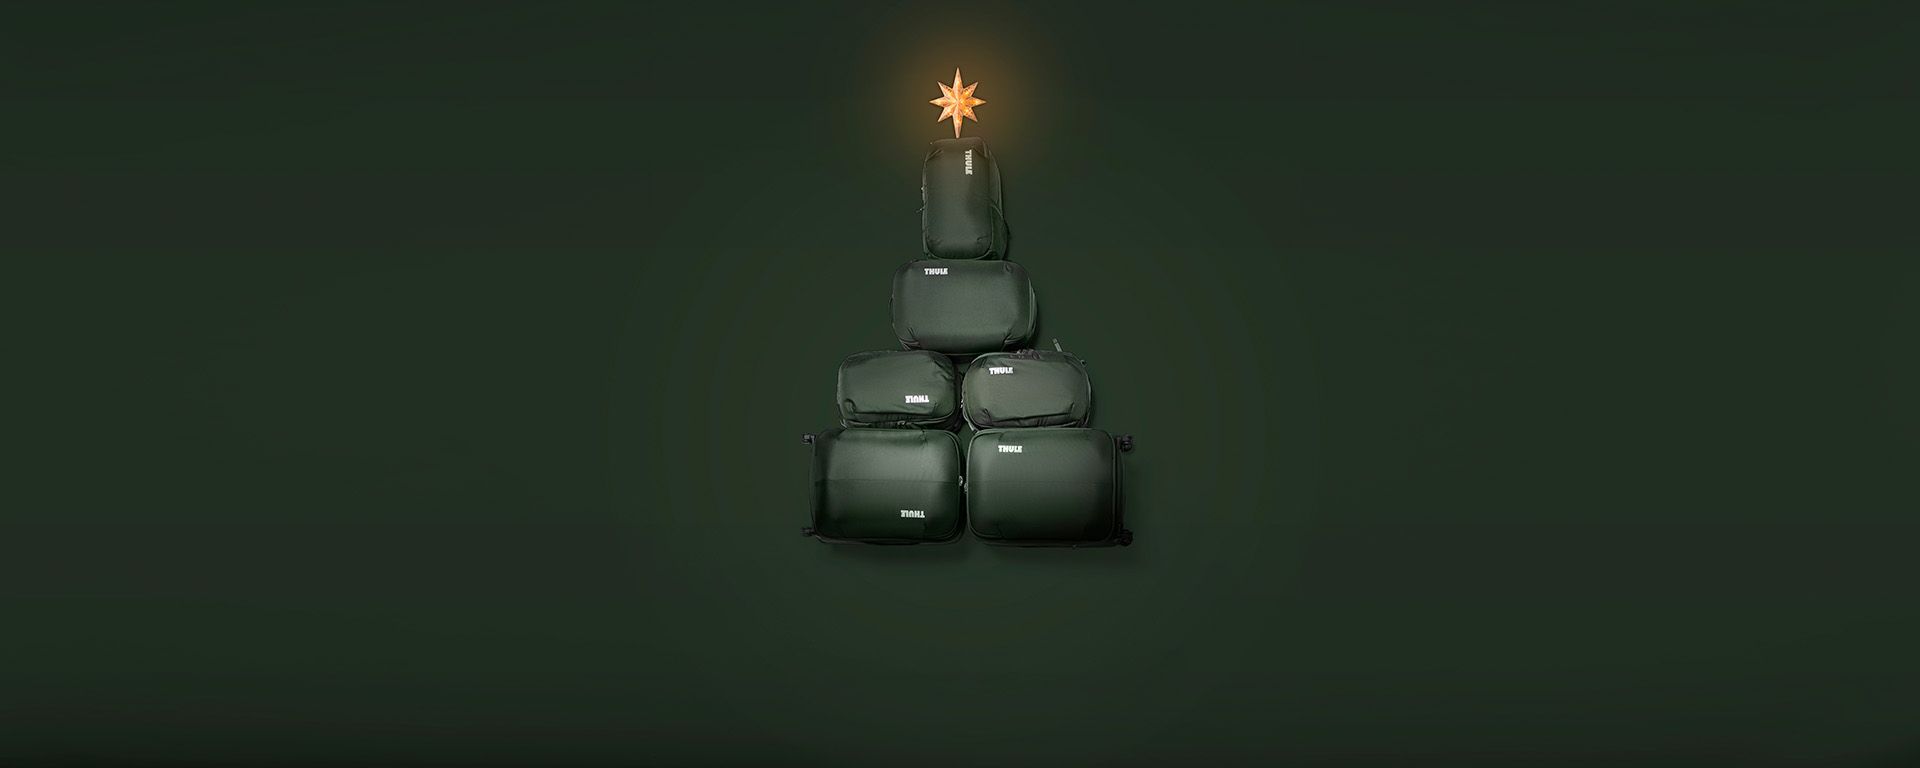 Četiri putne torbe Thule Chasm zelene boje na gomili sa zvijezdom na vrhu poput božićnog drvca.